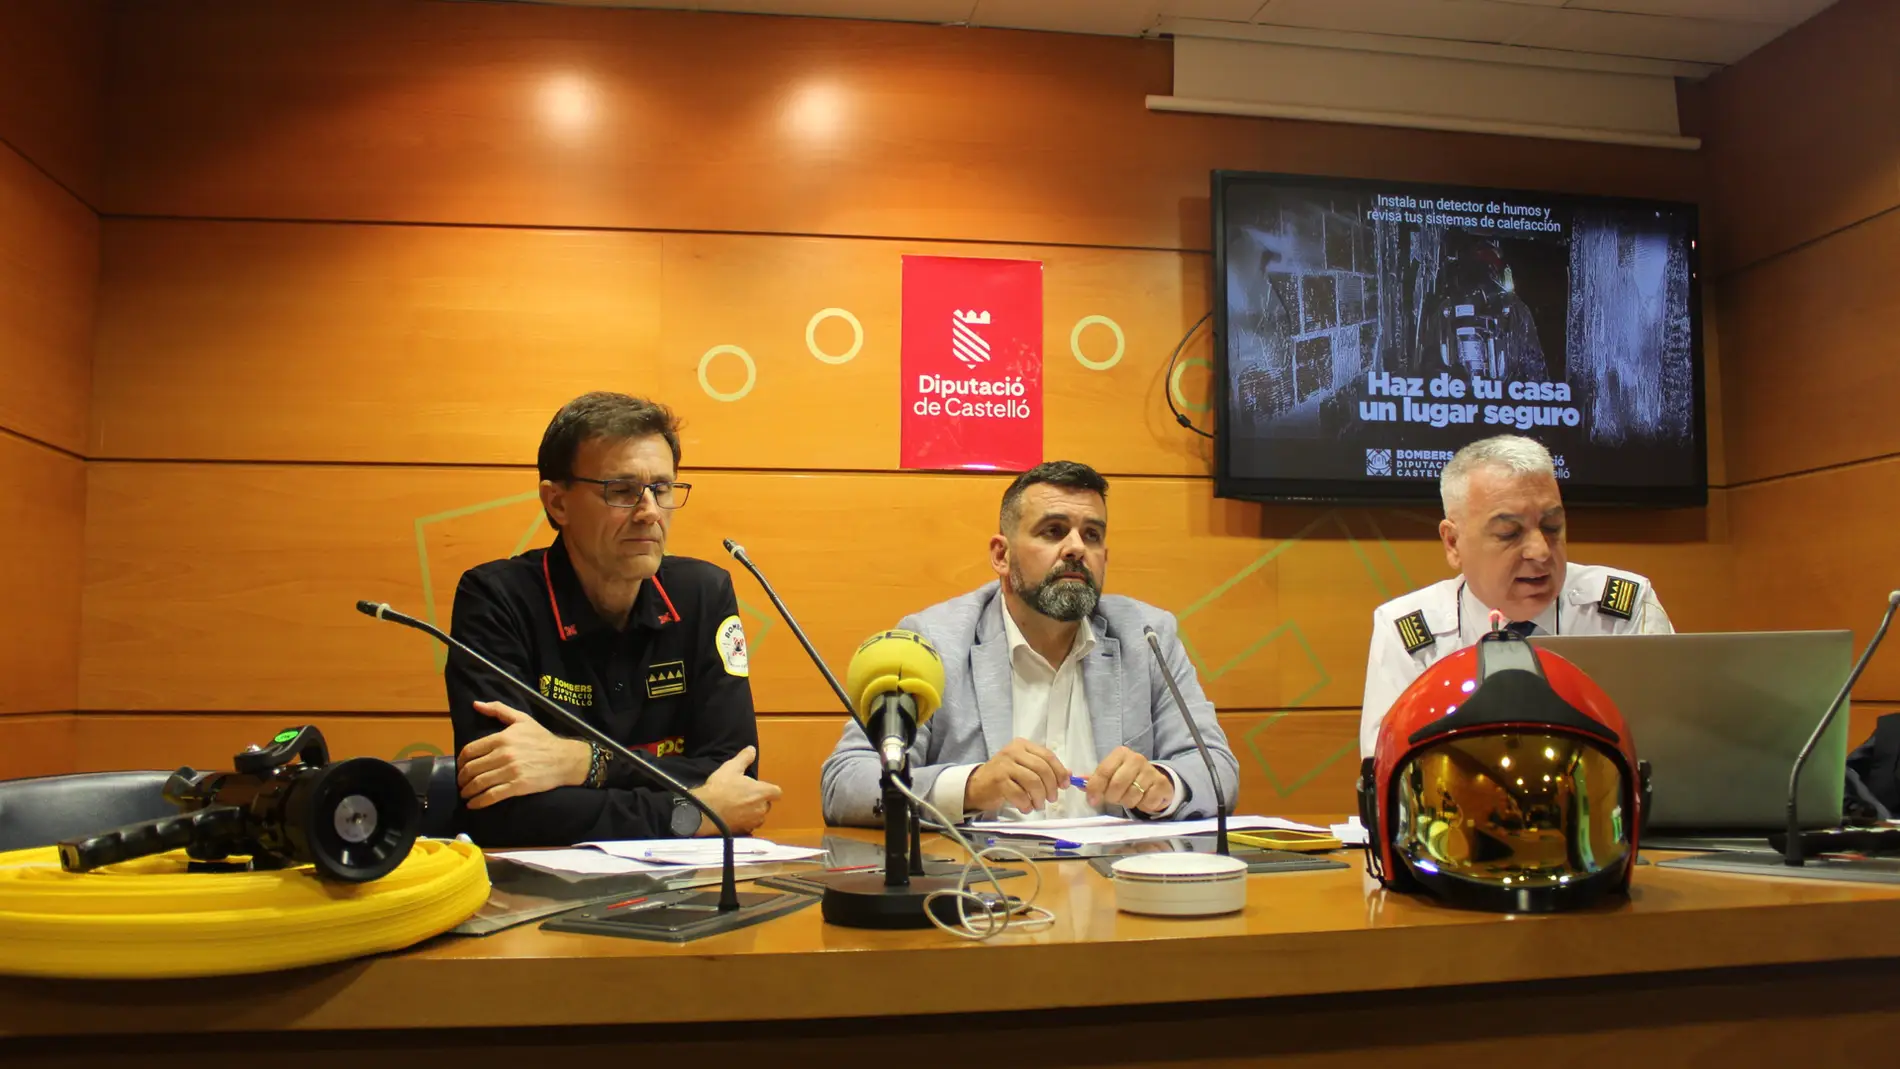 La Diputación de Castellón refuerza sus trabajos de prevención de incendios con una campaña de sensibilización ciudadana